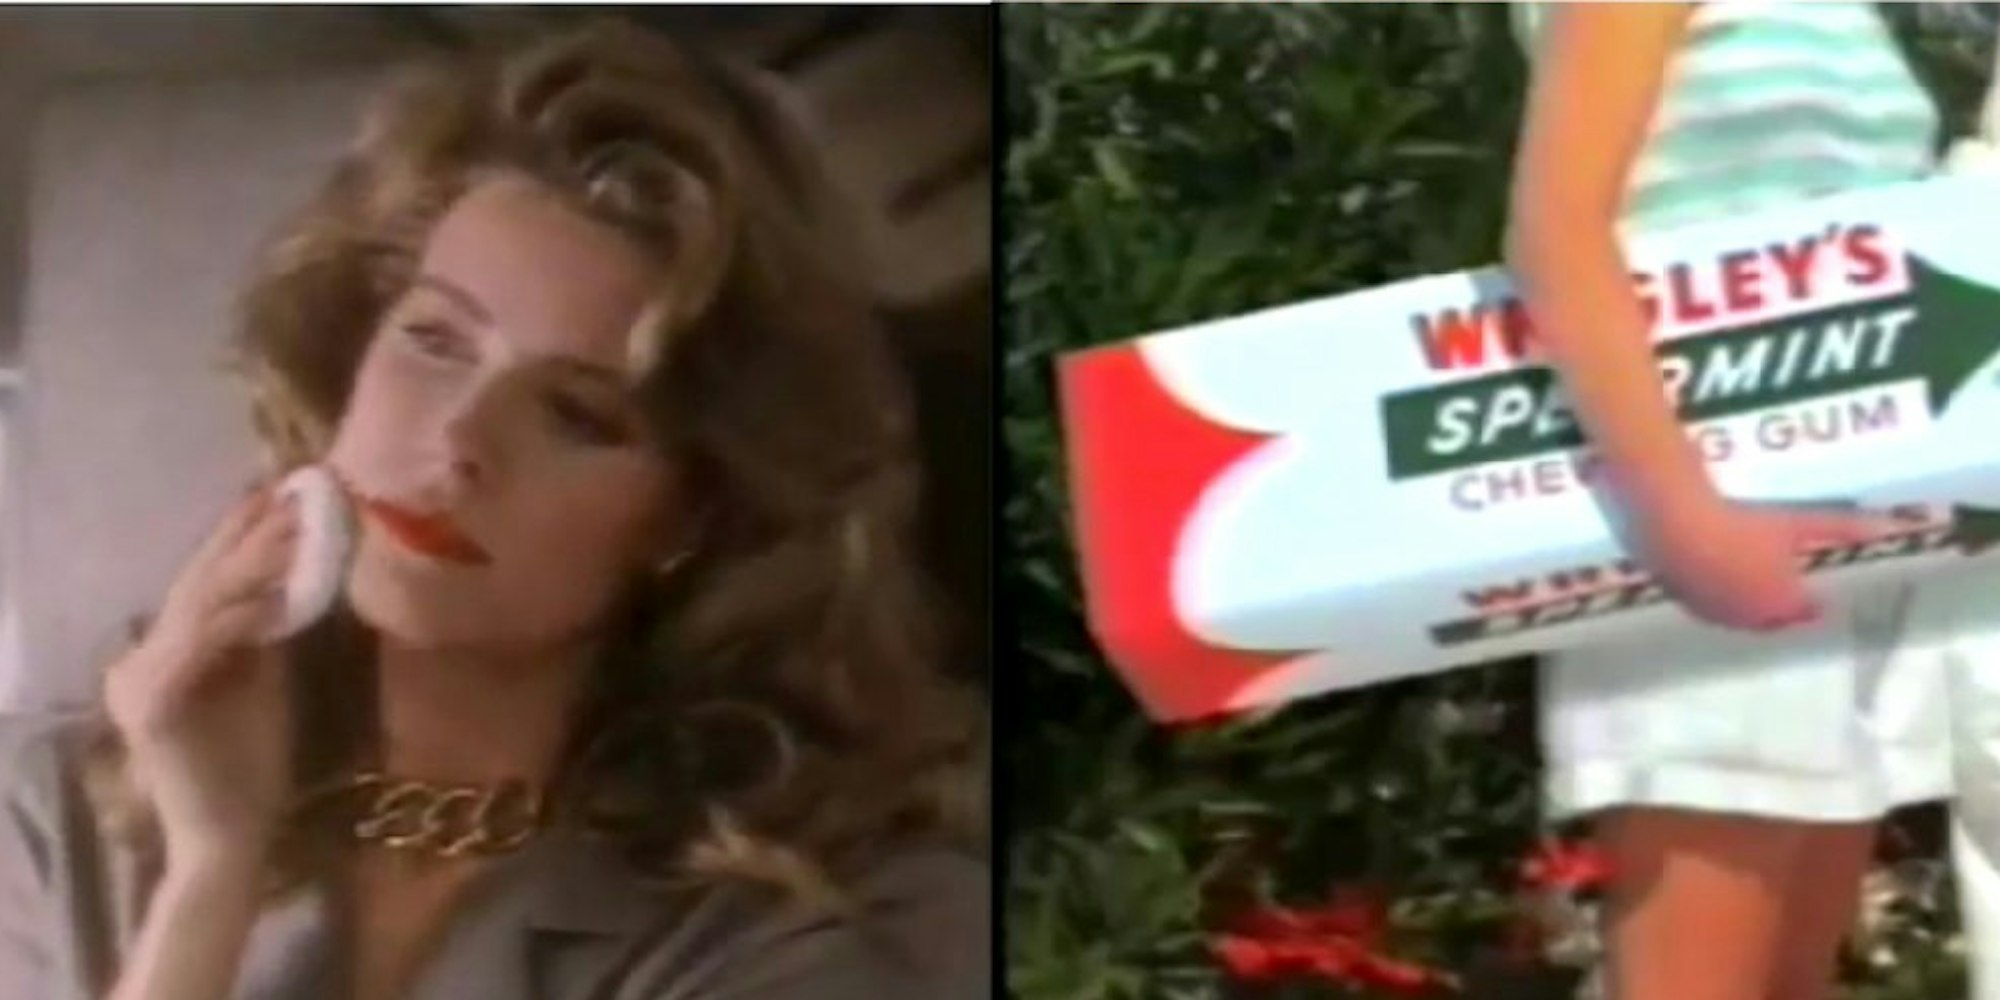 Dauerfrische Minz-Kaugummis oder die bombenfeste Lockenpracht einer Business-Frau: Die Fernsehwerbung der 80er und 90er bringt uns heute zum Lachen.